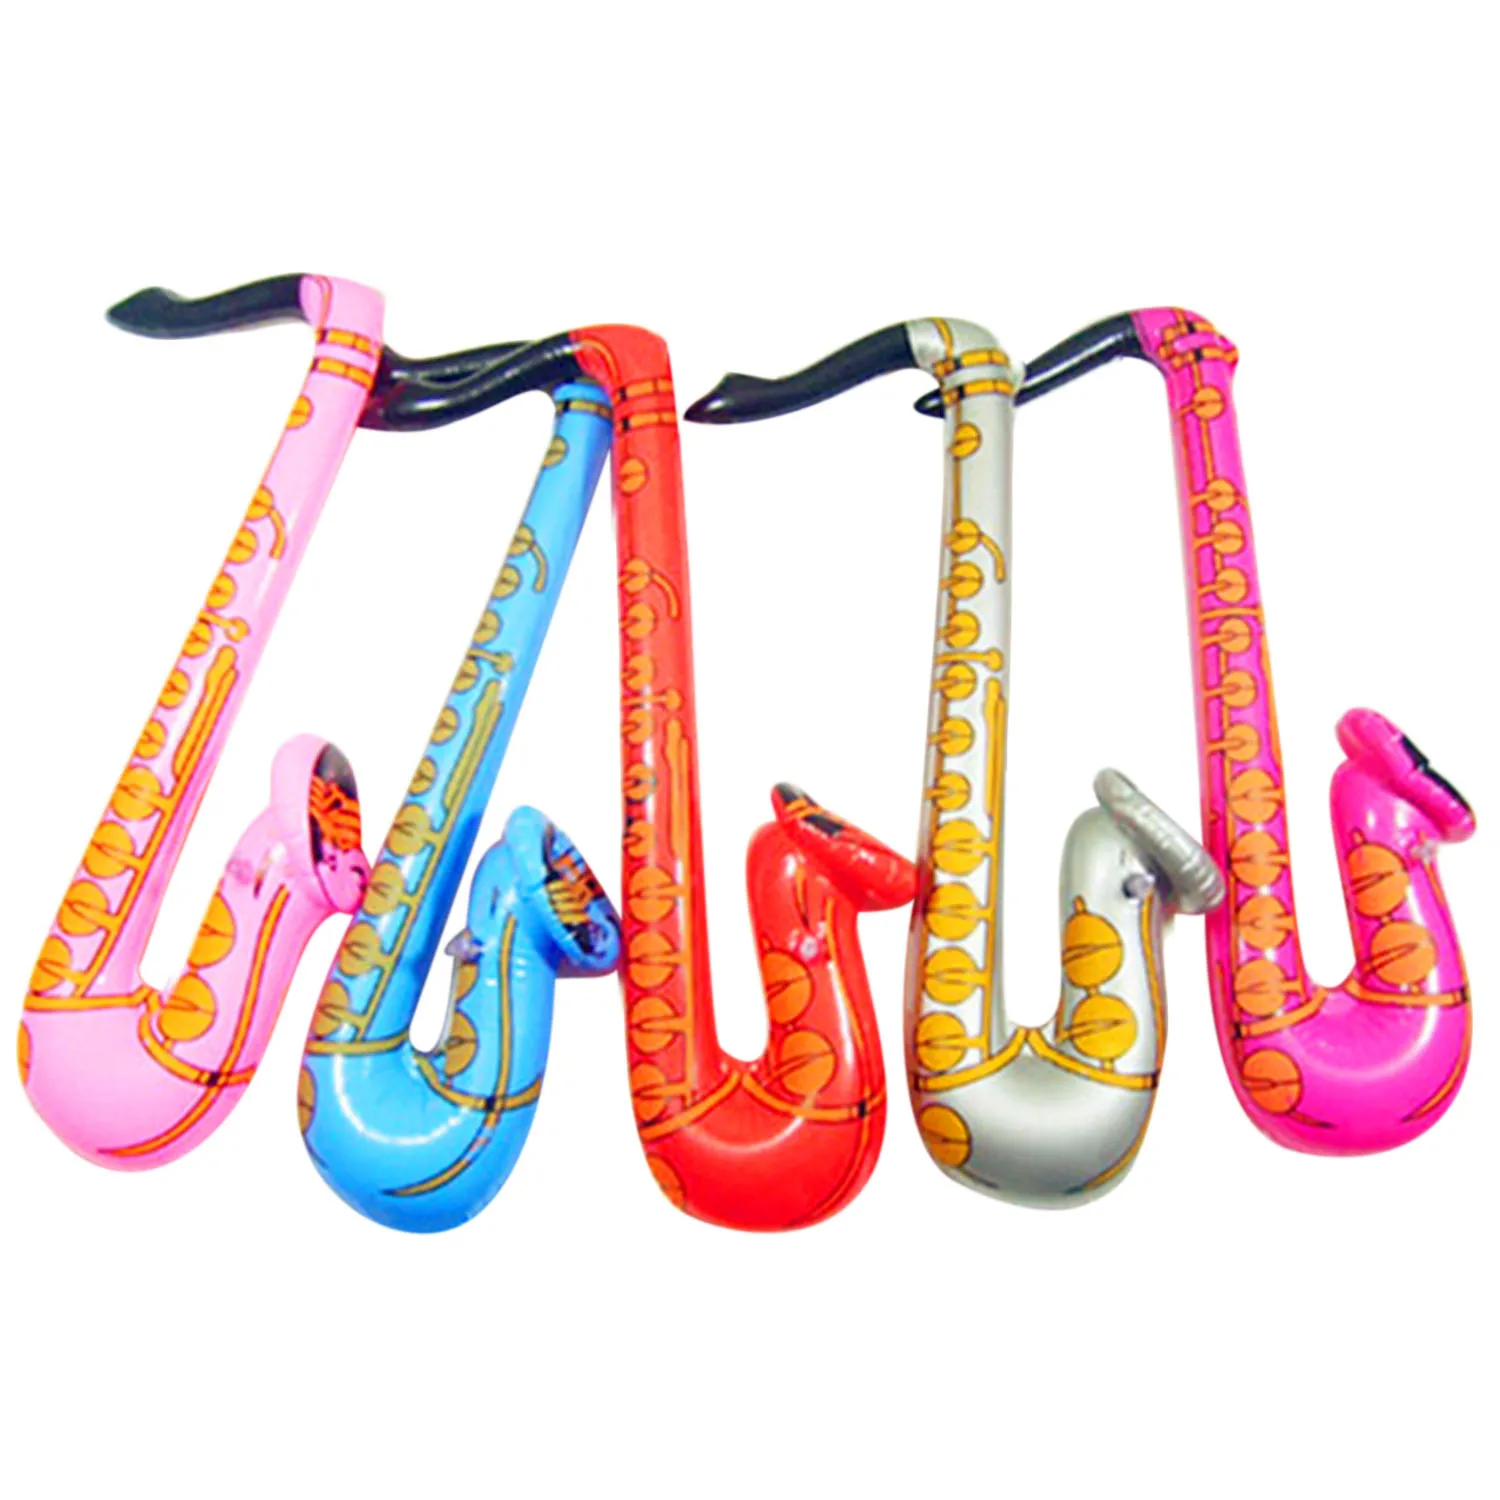 14cps надувные музыкальные гитары саксофон микрофон Музыкальные инструменты Воздушные шары игрушки декоративные аксессуары для бассейна